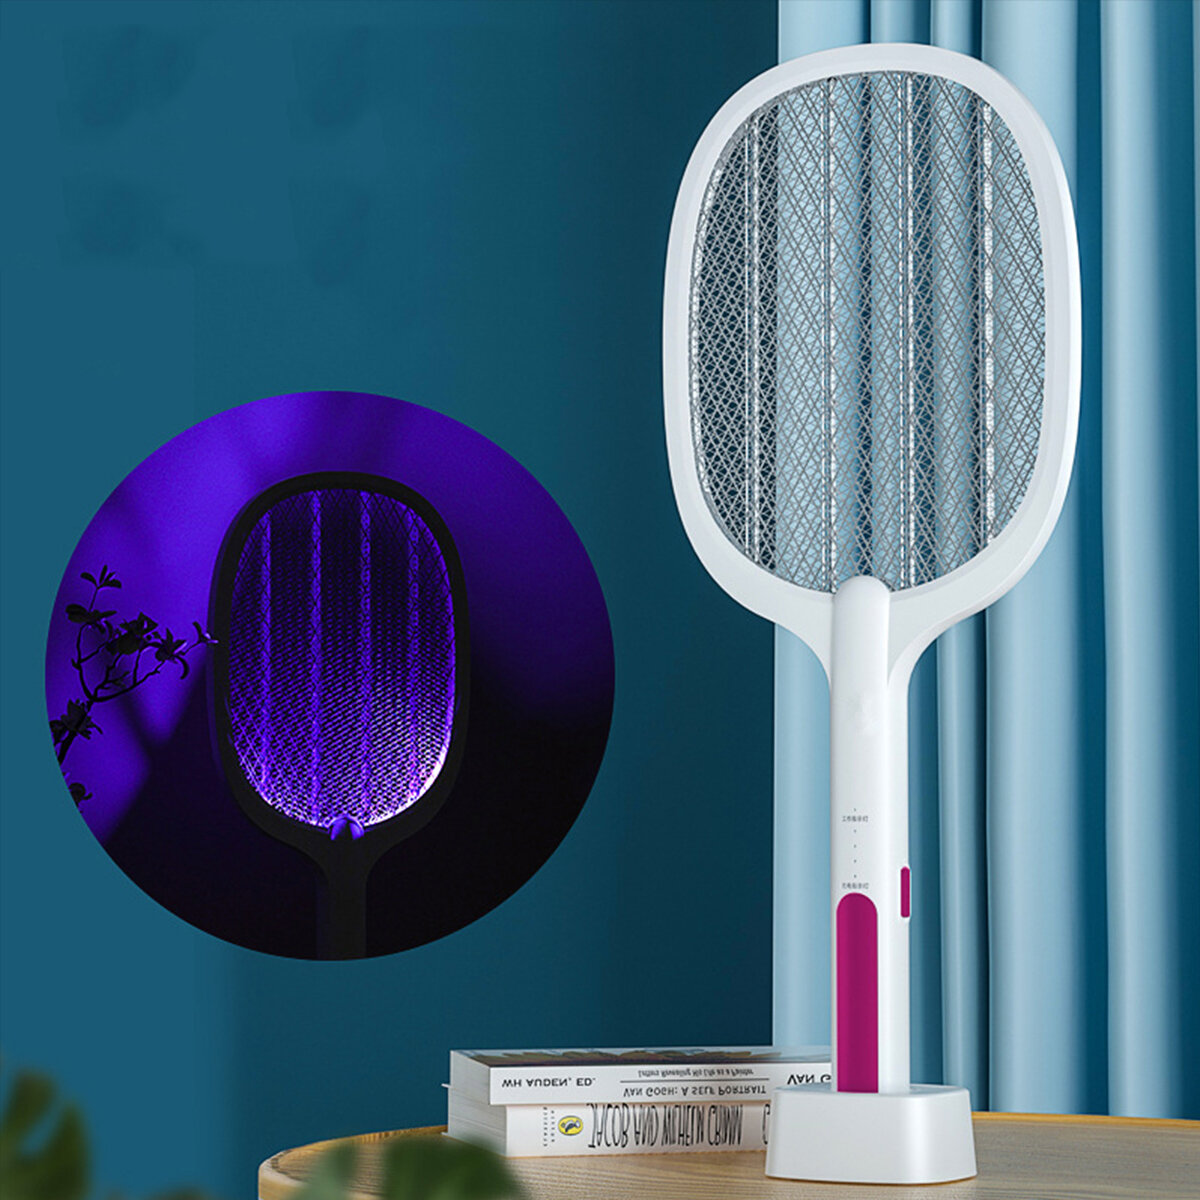 Mata mosquitos eléctrico de 3000V con lámpara UV, inalámbrico, carga USB, atrapa moscas y mosquitos para camping, trampa para insectos en el hogar.